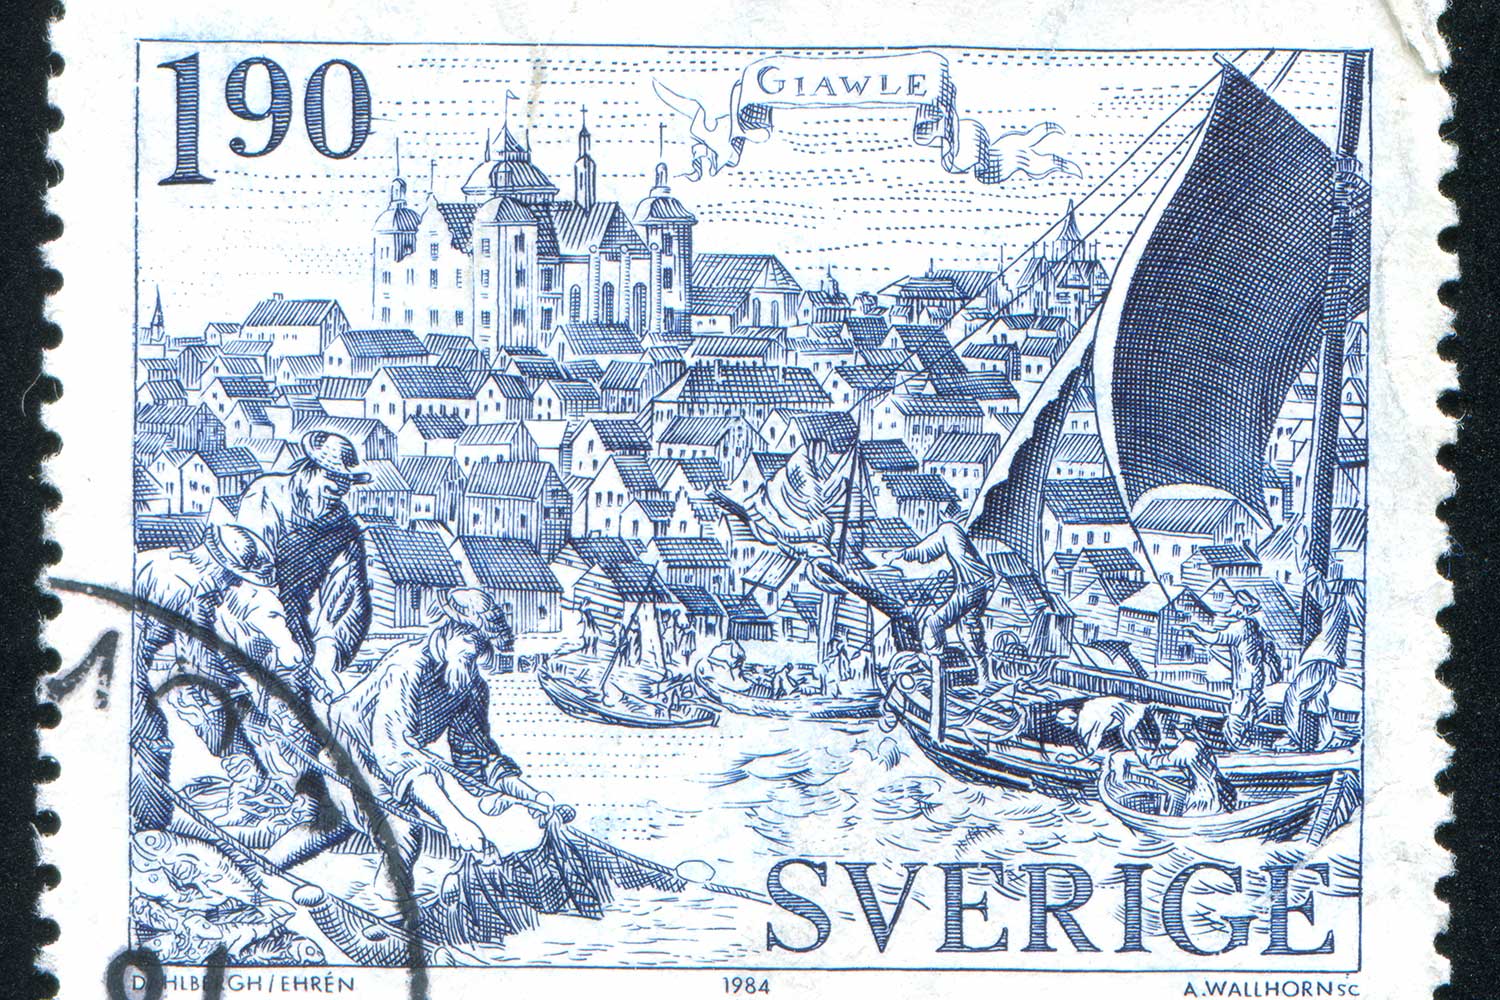 Historische Szene auf einer schwedischen Briefmarke. Das Fangpotenzial der Fischereiflotten in der frühen Neuzeit stand jenem der heutigen Fischerei in kaum etwas nach. Bild: rook76 – stock.adobe.com